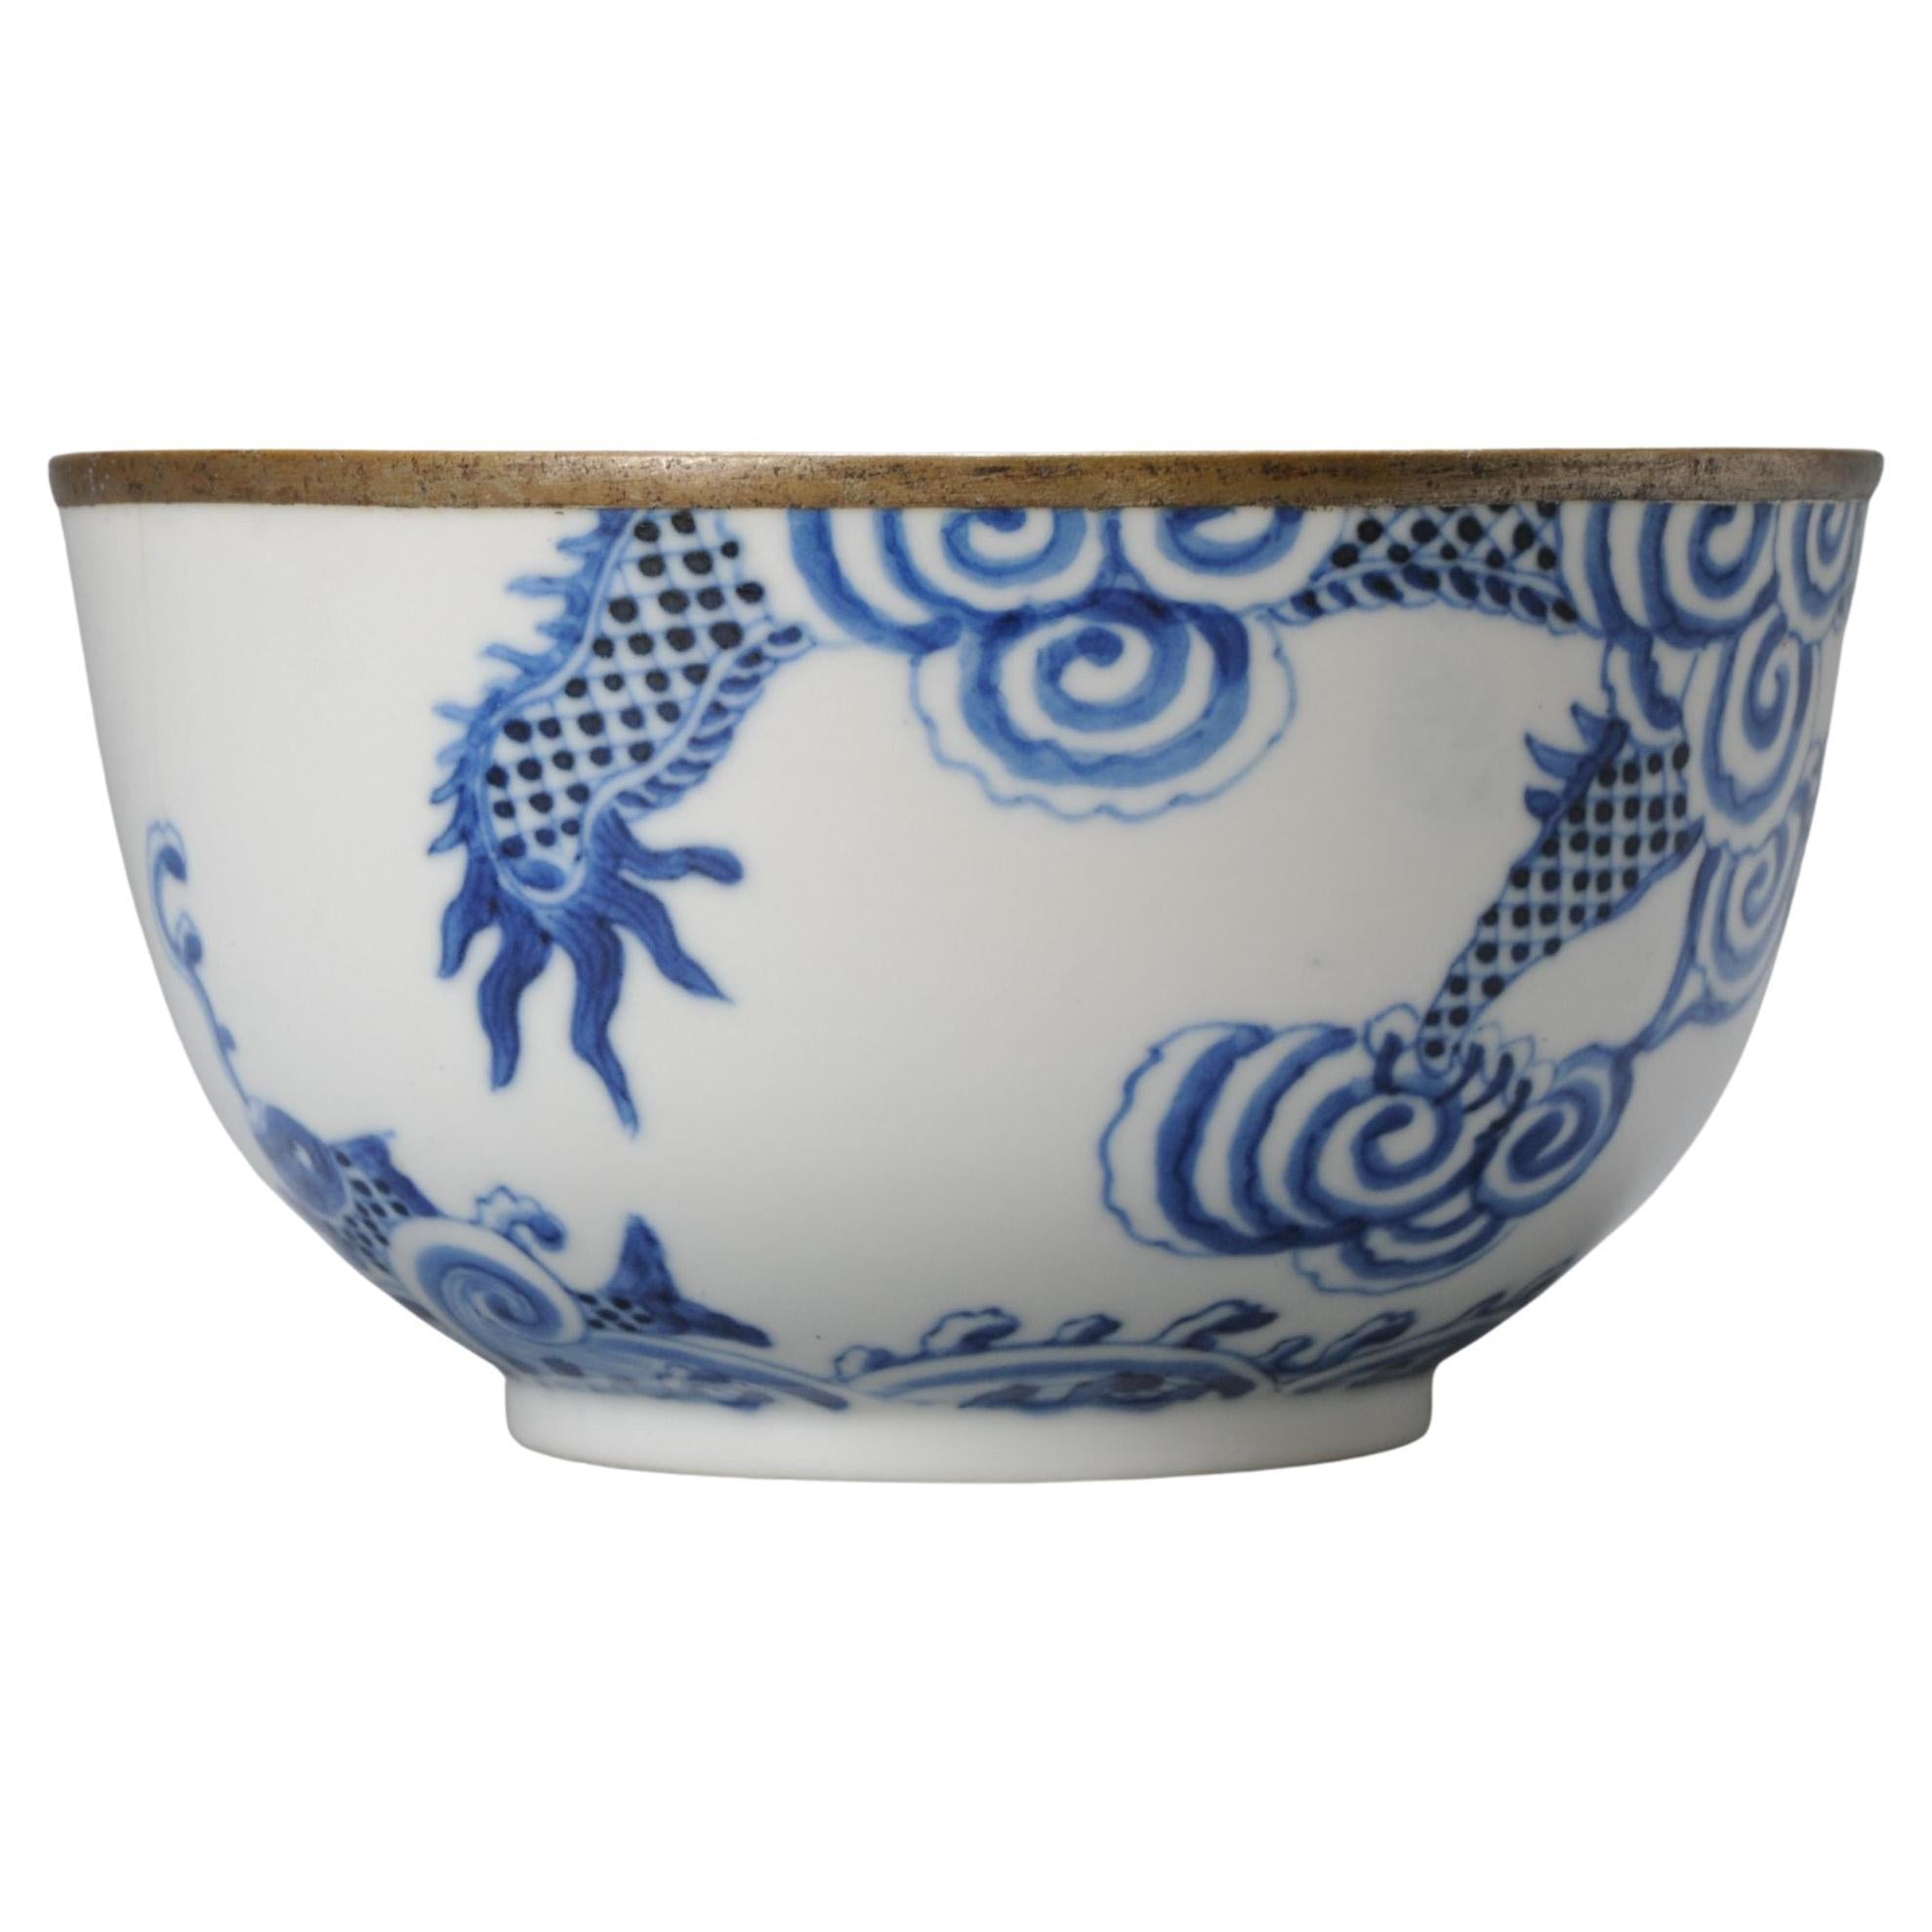 Antike 19C Chinese Porcelain Bowl Bleu de Hue Vietnamesisch markiert Basis